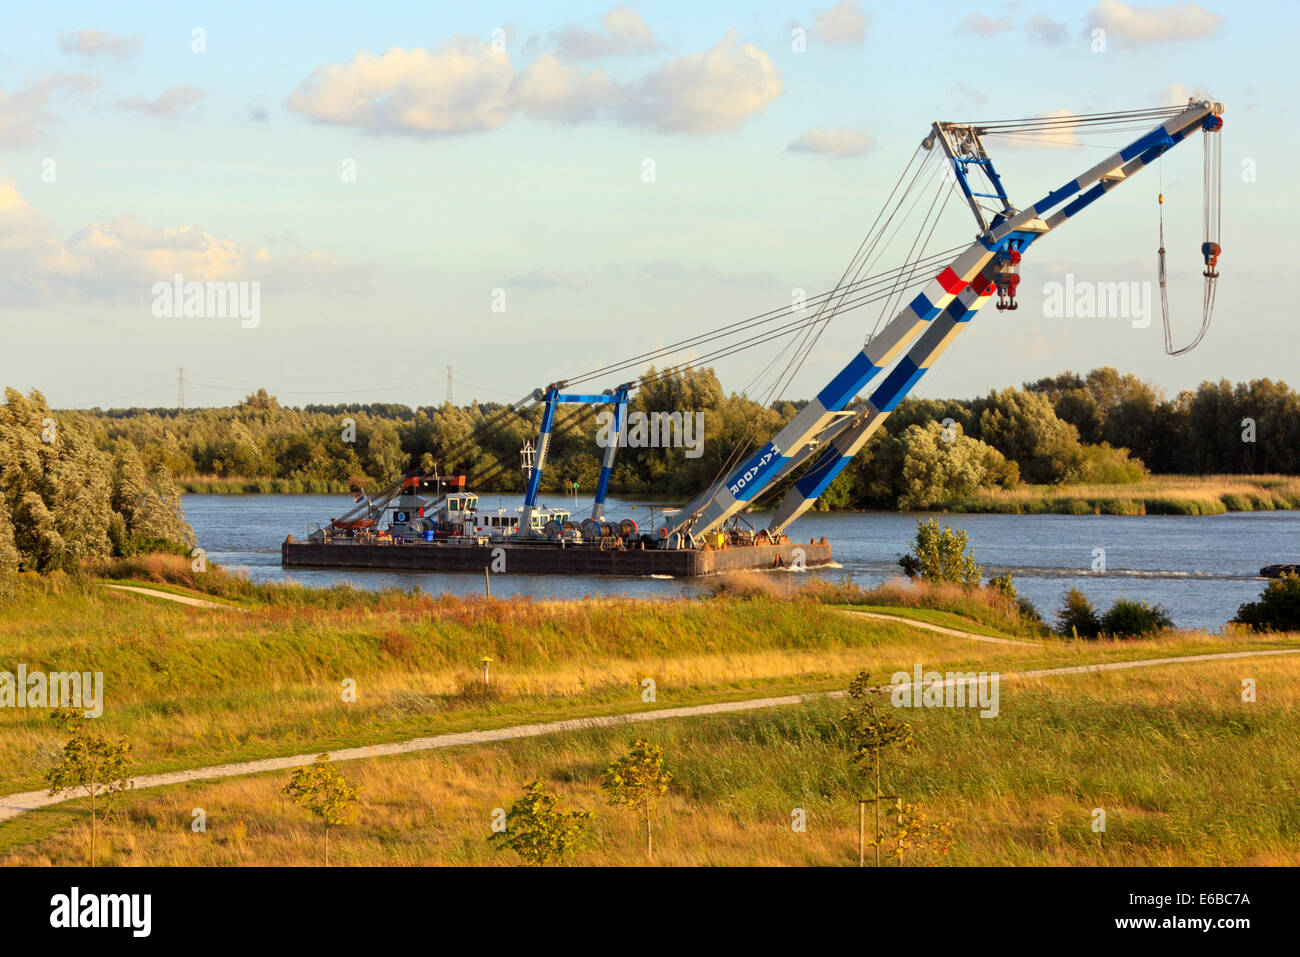 Crane Barge 'Matador' under tow on Oude Maas River Stock Photo